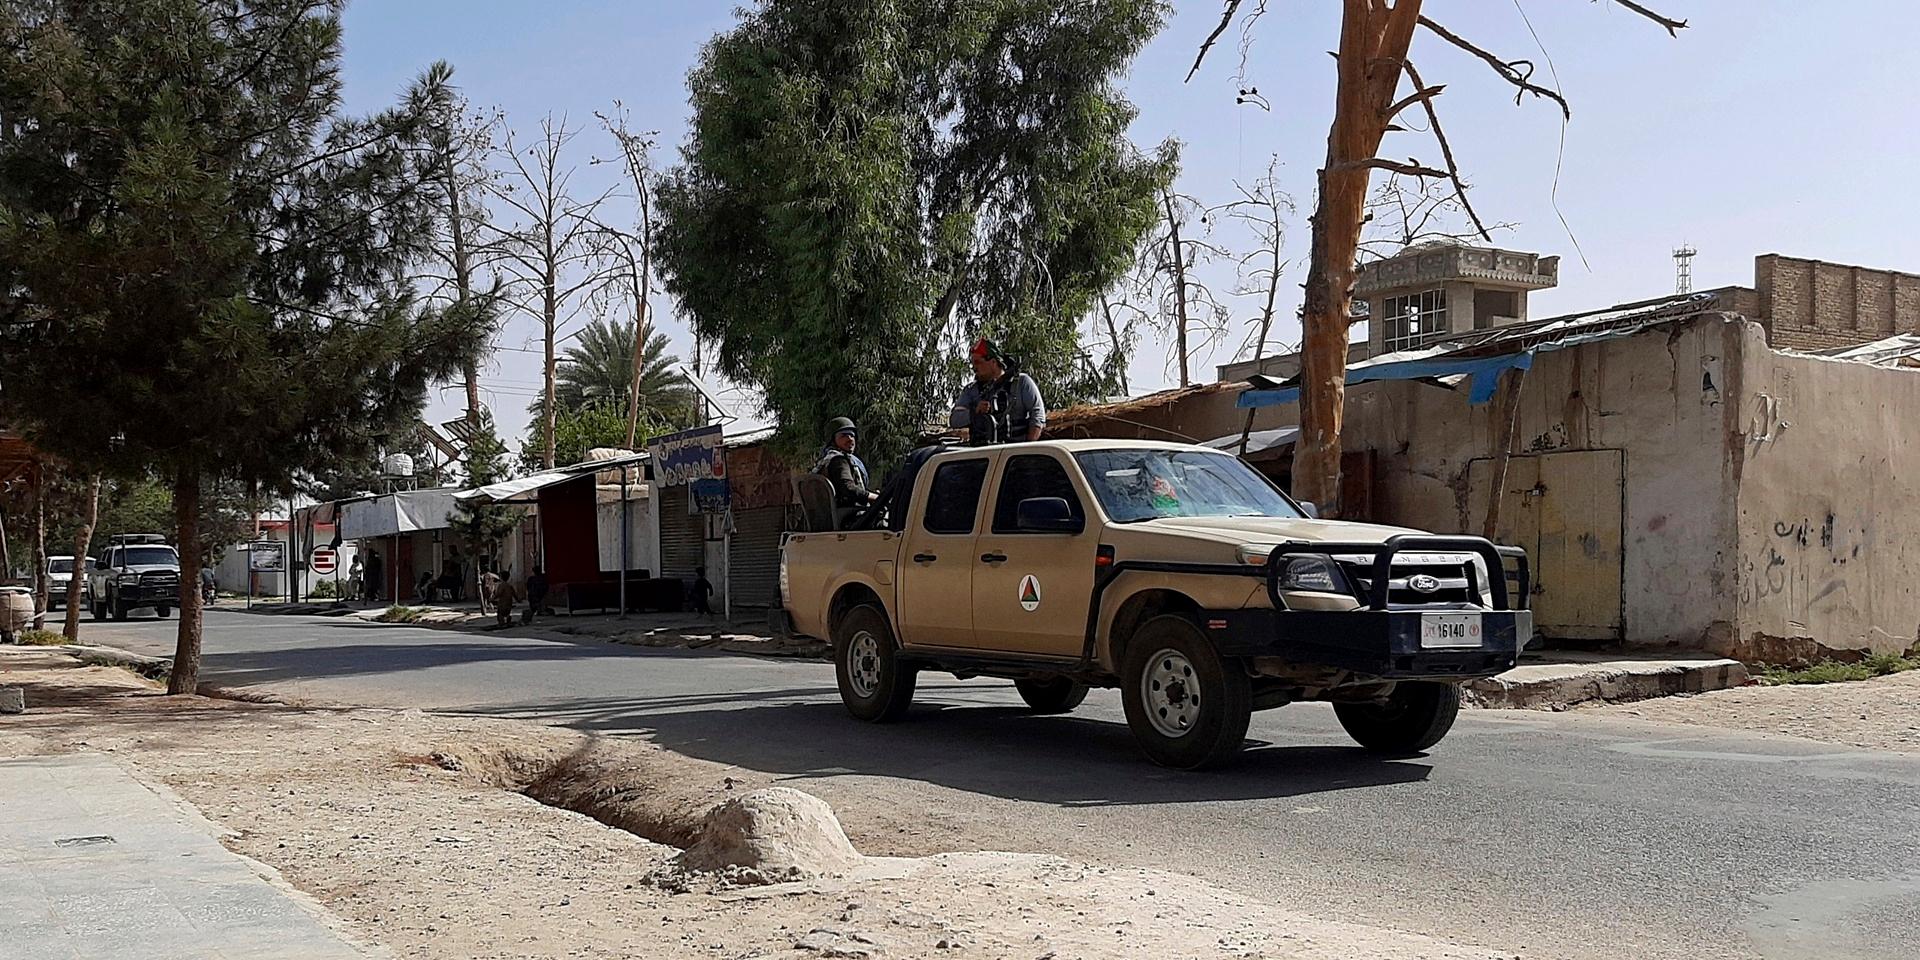 Regeringsstyrkorna som patrullerar Lashkar Gahs öde gator har uppmanat invånarna att fly staden 'några dagar' för att man ska kunna slå tillbaka talibanerna.